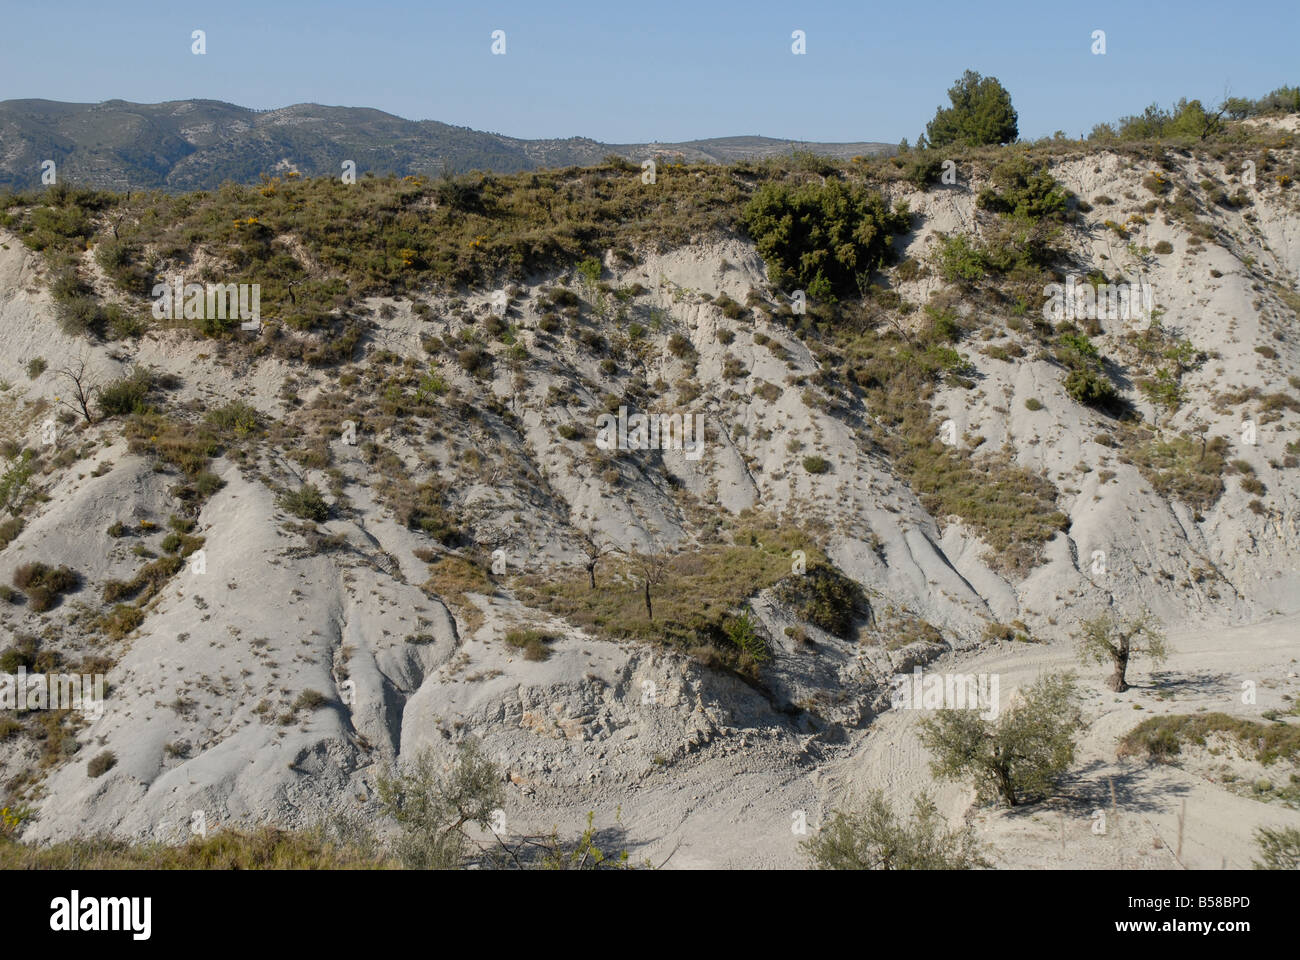 eroded landscape in the Valle de Ceta, near Quatretondeta, Comtat, Alicante Province, Comunidad Valenciana, Spain Stock Photo